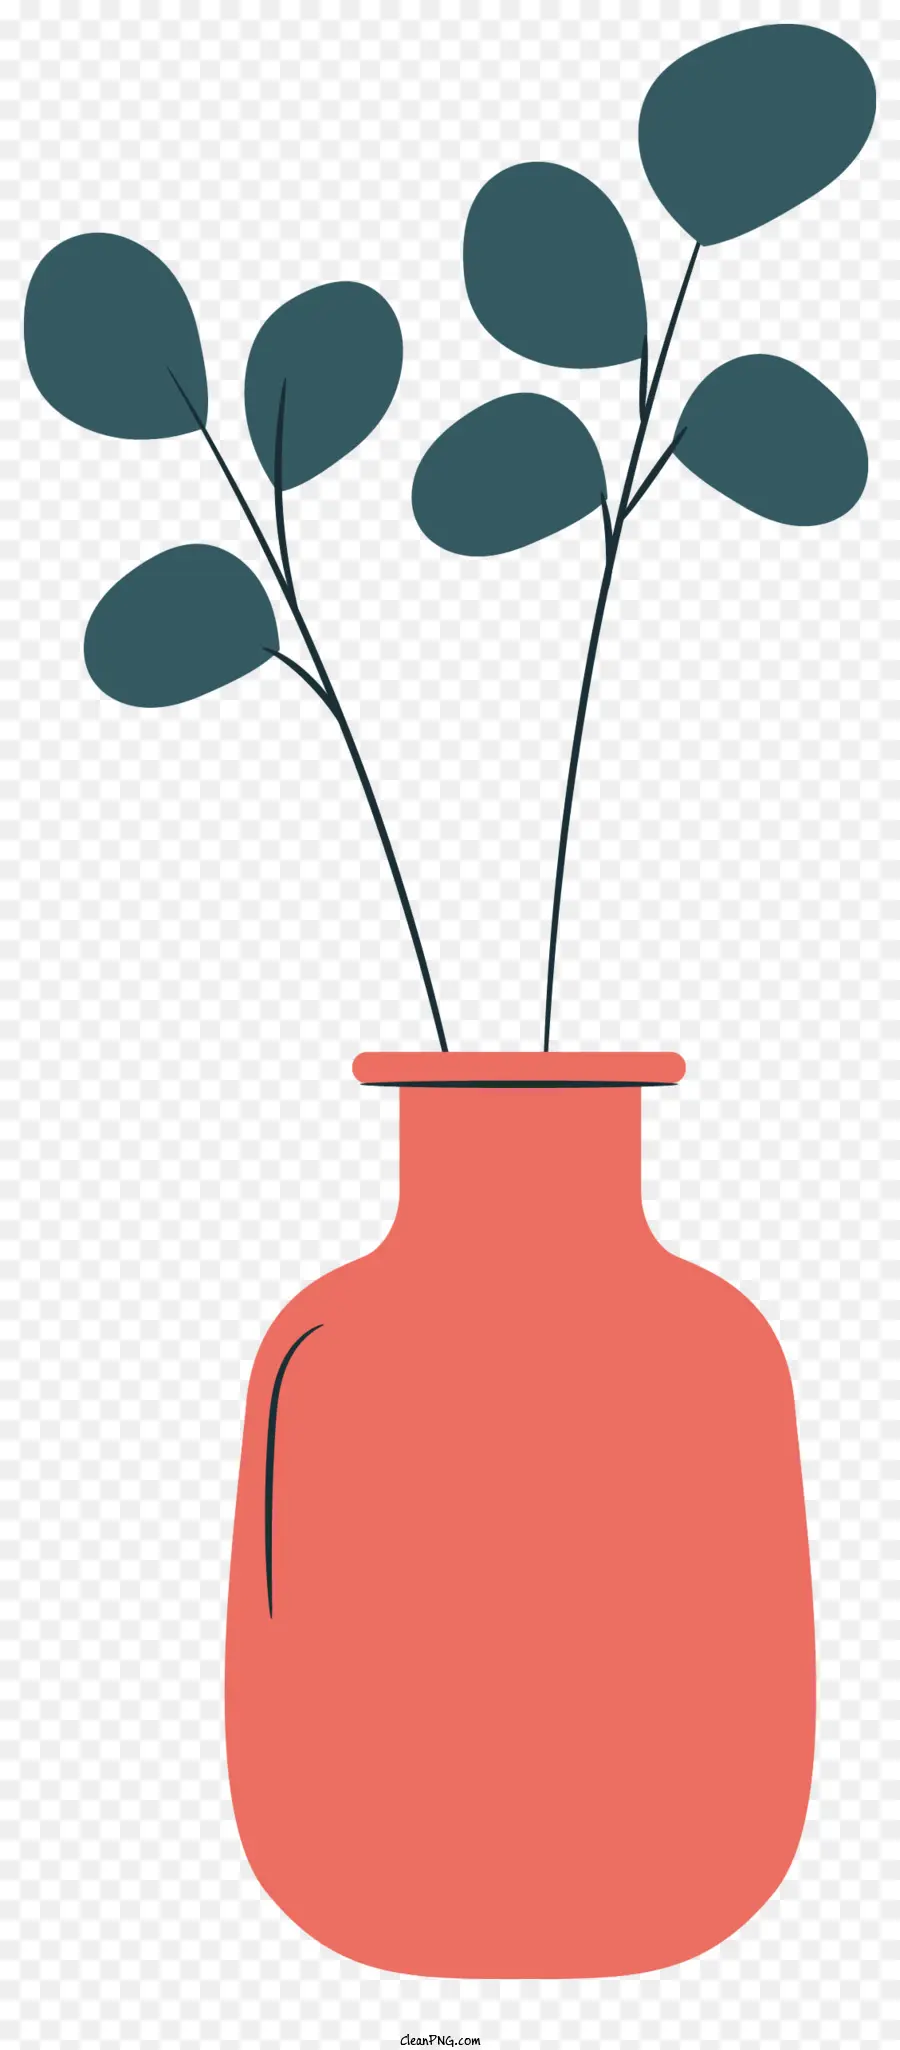 Vaso rosso pianta in vaso forma rotonda a base larga collo stretto - Il vaso rosso tiene pianta con foglie lunghe